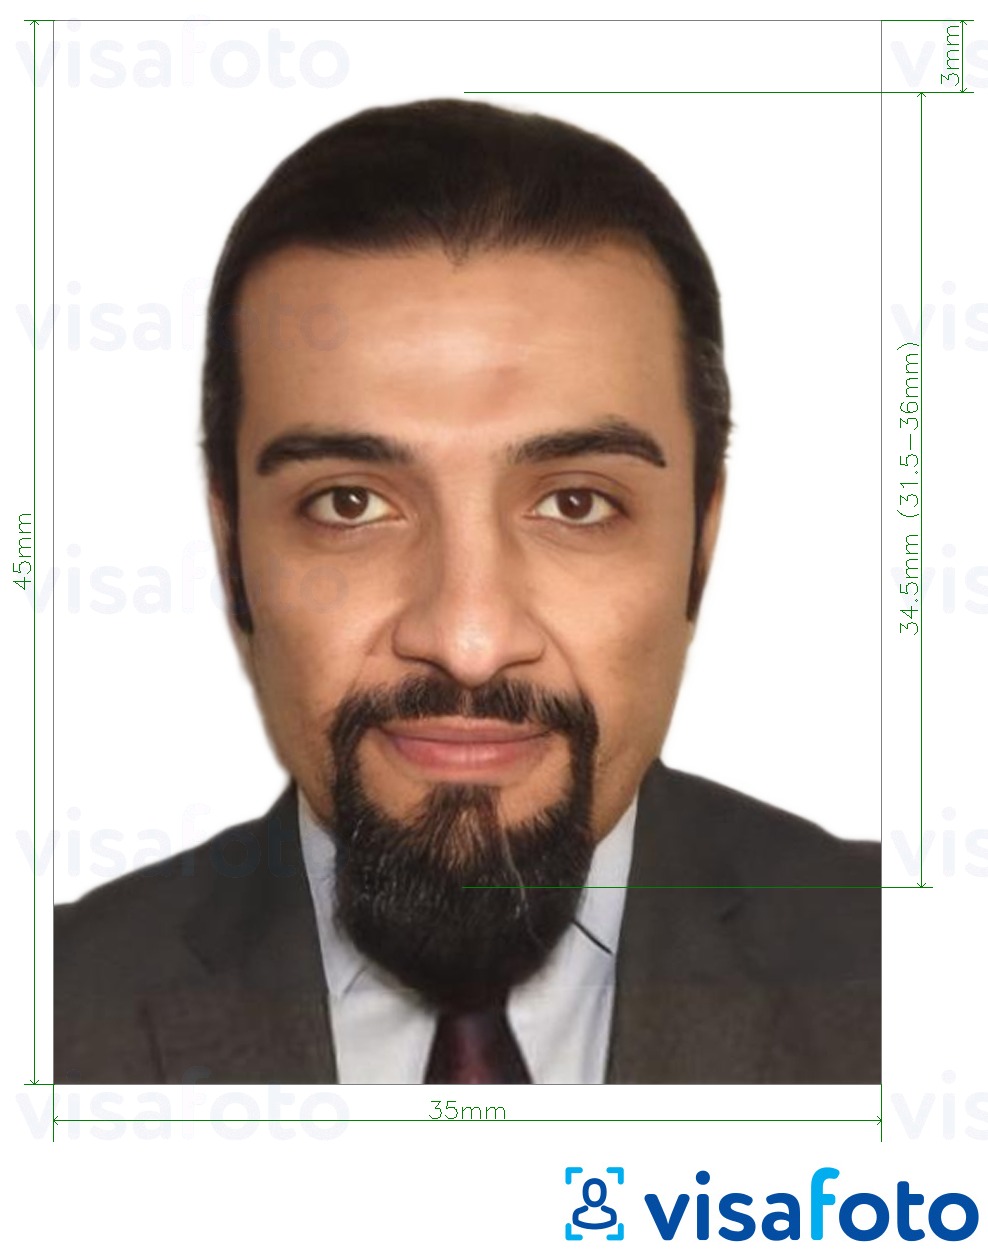 نمونه ی یک عکس برای اتیوپی e-visa آنلاین 35x45 میلی متر (3.5x4.5 سانتی متر) با مشخصات دقیق